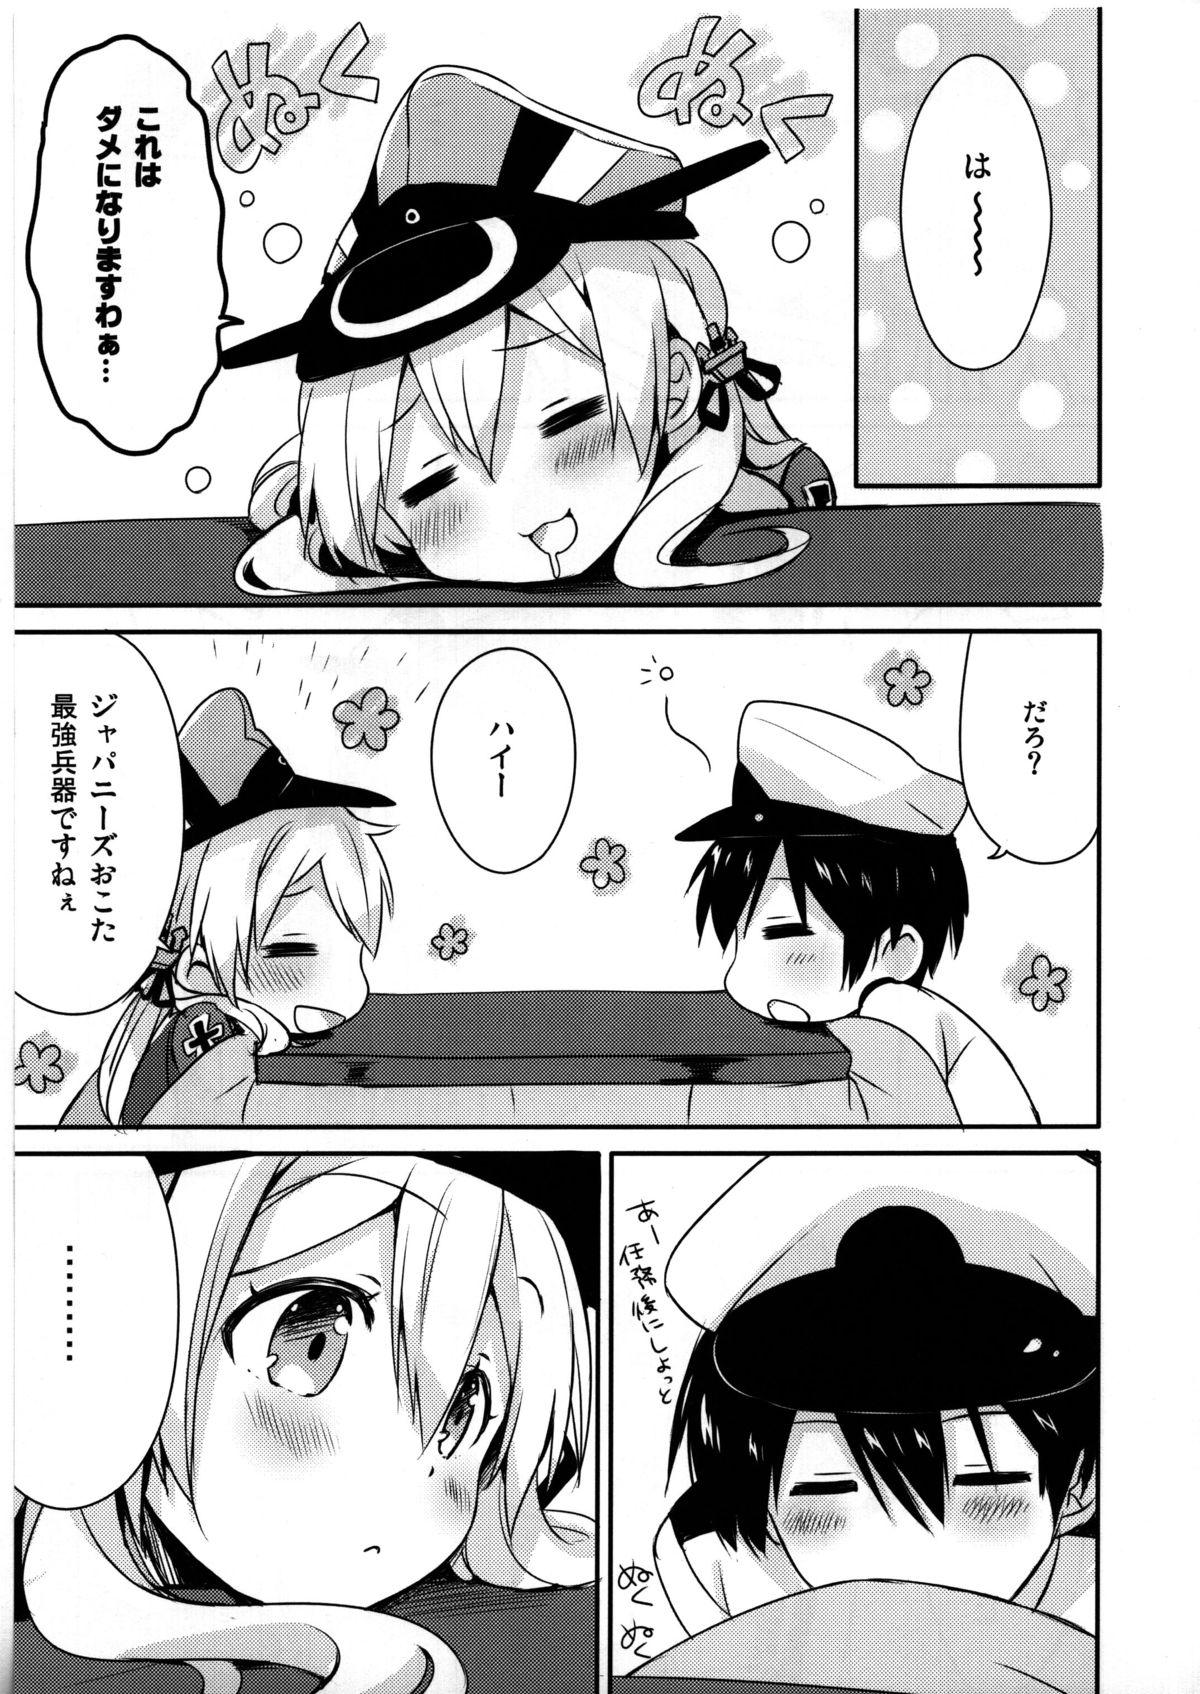 Nena Admiral-san Atatakai no ga Iino? - Kantai collection Chupando - Page 7